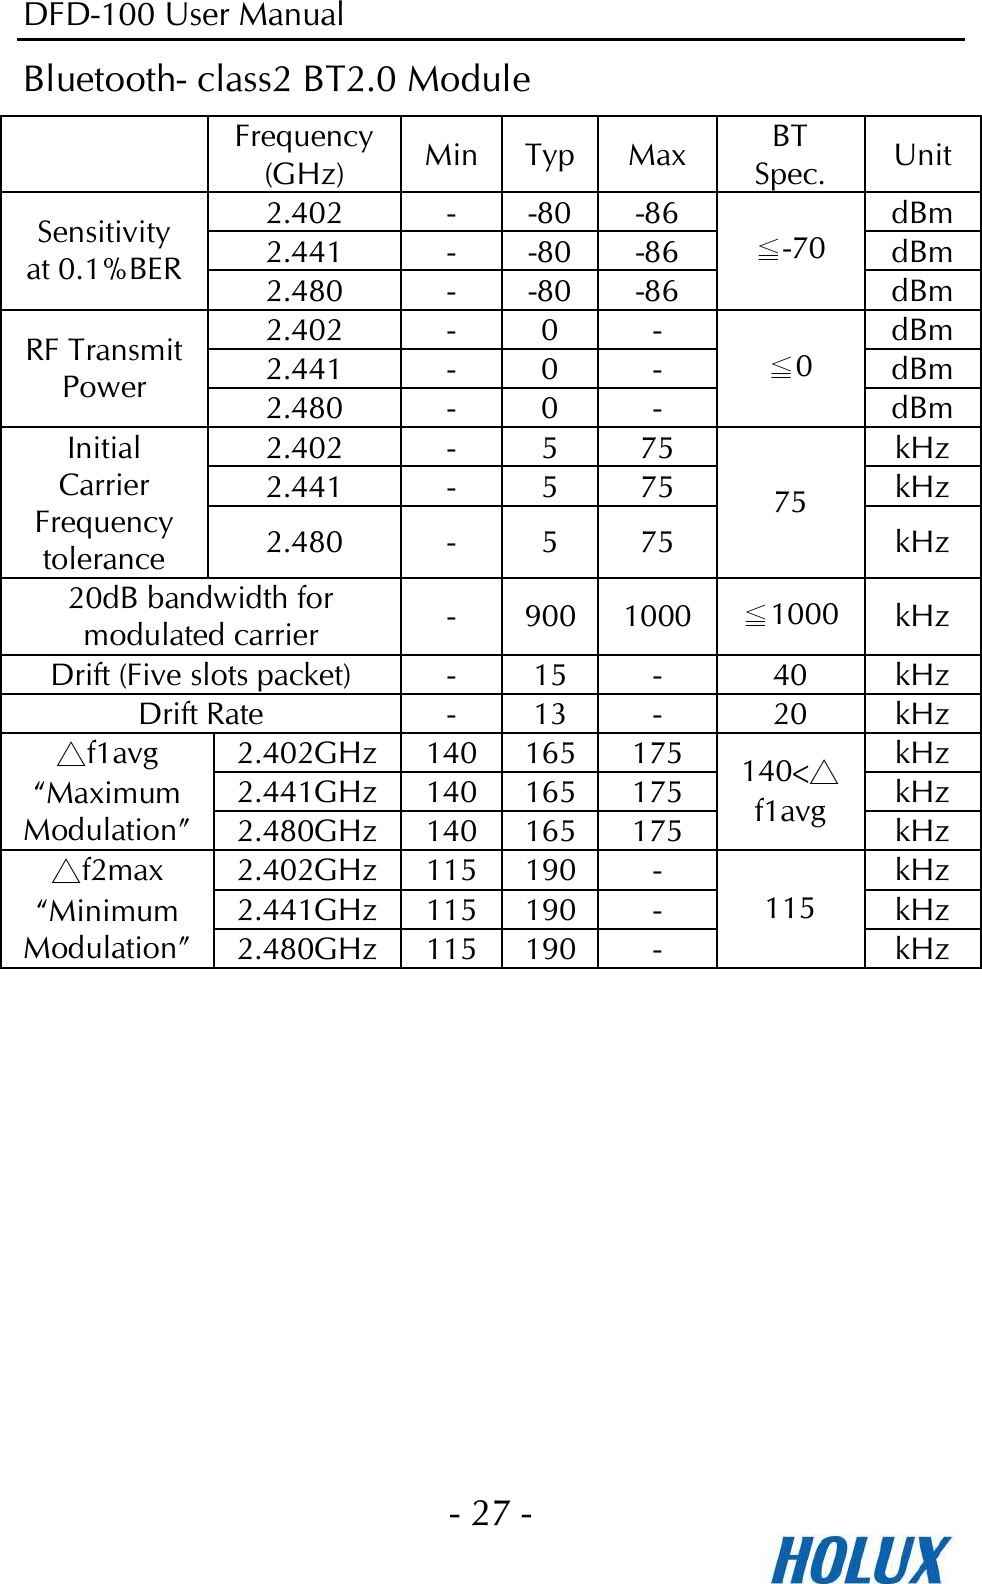 DFD-100 User Manual - 27 -  Bluetooth- class2 BT2.0 Module  Frequency (GHz)  Min Typ Max BT Spec.  Unit 2.402  -  -80 -86  dBm 2.441  -  -80 -86  dBm Sensitivity at 0.1%BER 2.480  -  -80 -86 ≦-70 dBm 2.402  -  0  -  dBm 2.441  -  0  -  dBm RF Transmit Power  2.480  -  0  - ≦0 dBm 2.402  -  5  75  kHz 2.441  -  5  75  kHz Initial Carrier Frequency tolerance  2.480  -  5  75 75 kHz 20dB bandwidth for modulated carrier  -  900 1000 ≦1000 kHz Drift (Five slots packet)  -  15 -  40  kHz Drift Rate  -  13 -  20  kHz 2.402GHz 140 165 175 kHz 2.441GHz 140 165 175 kHz △f1avg “Maximum Modulation” 2.480GHz 140 165 175 140&lt;△f1avg  kHz 2.402GHz 115 190 -  kHz 2.441GHz 115 190 -  kHz △f2max “Minimum Modulation” 2.480GHz 115 190 - 115 kHz   